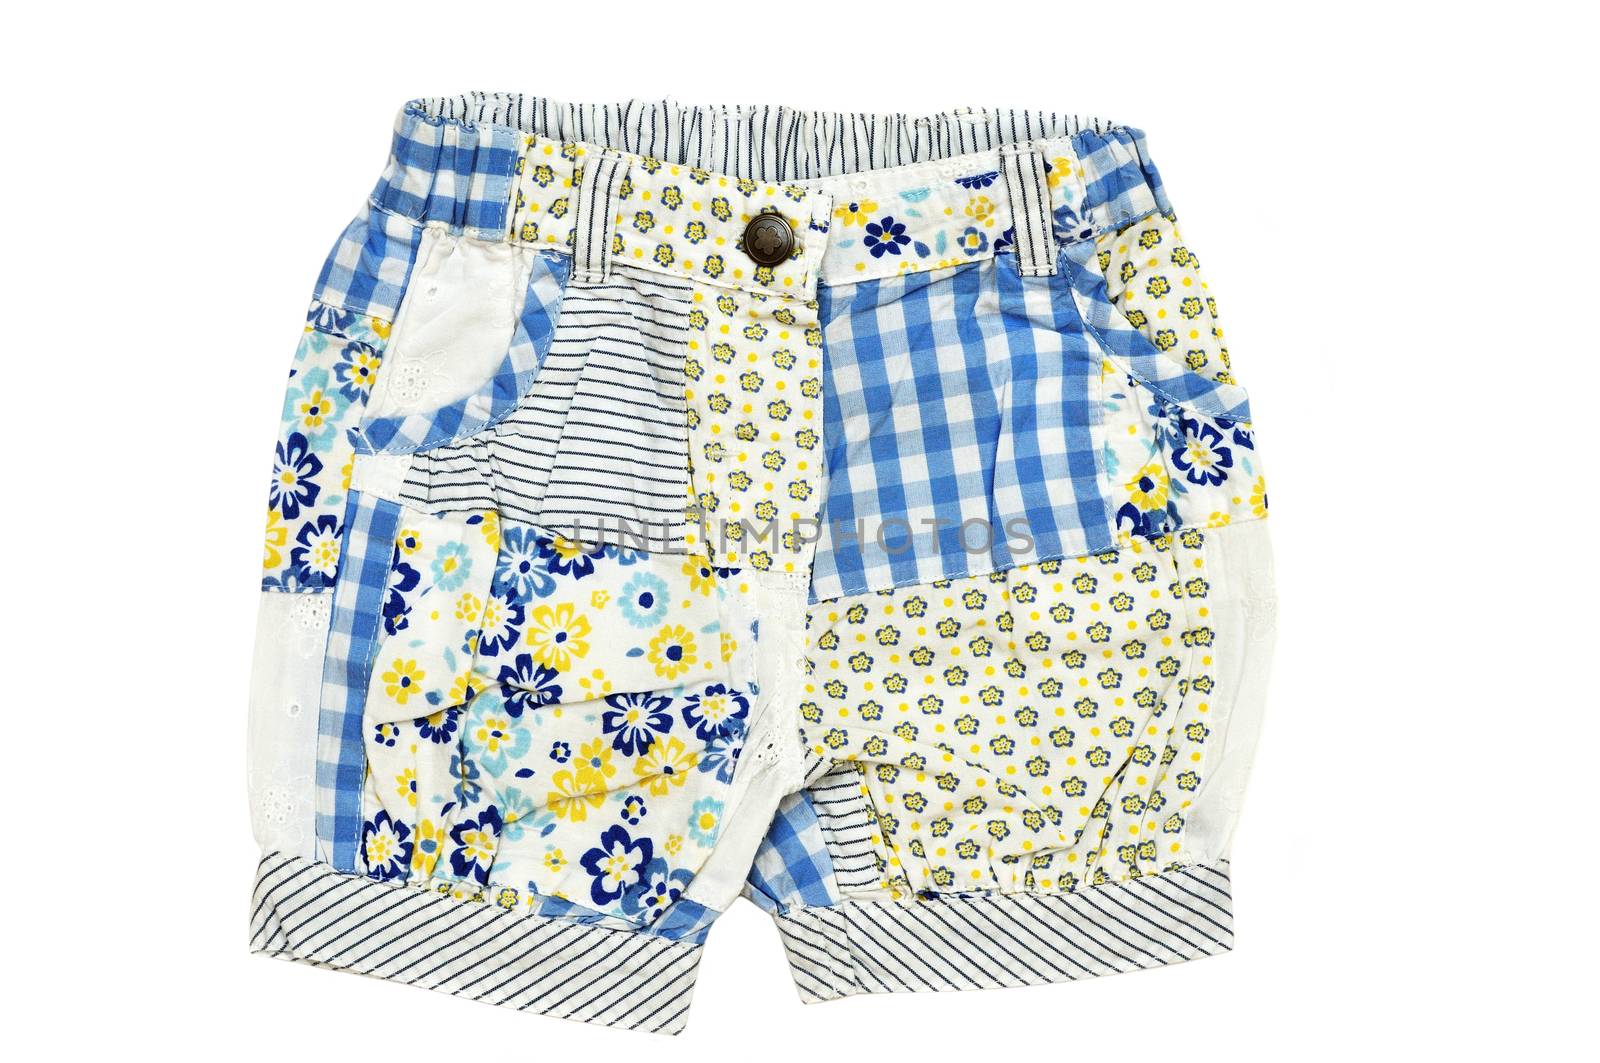 baby's shorts by Reana